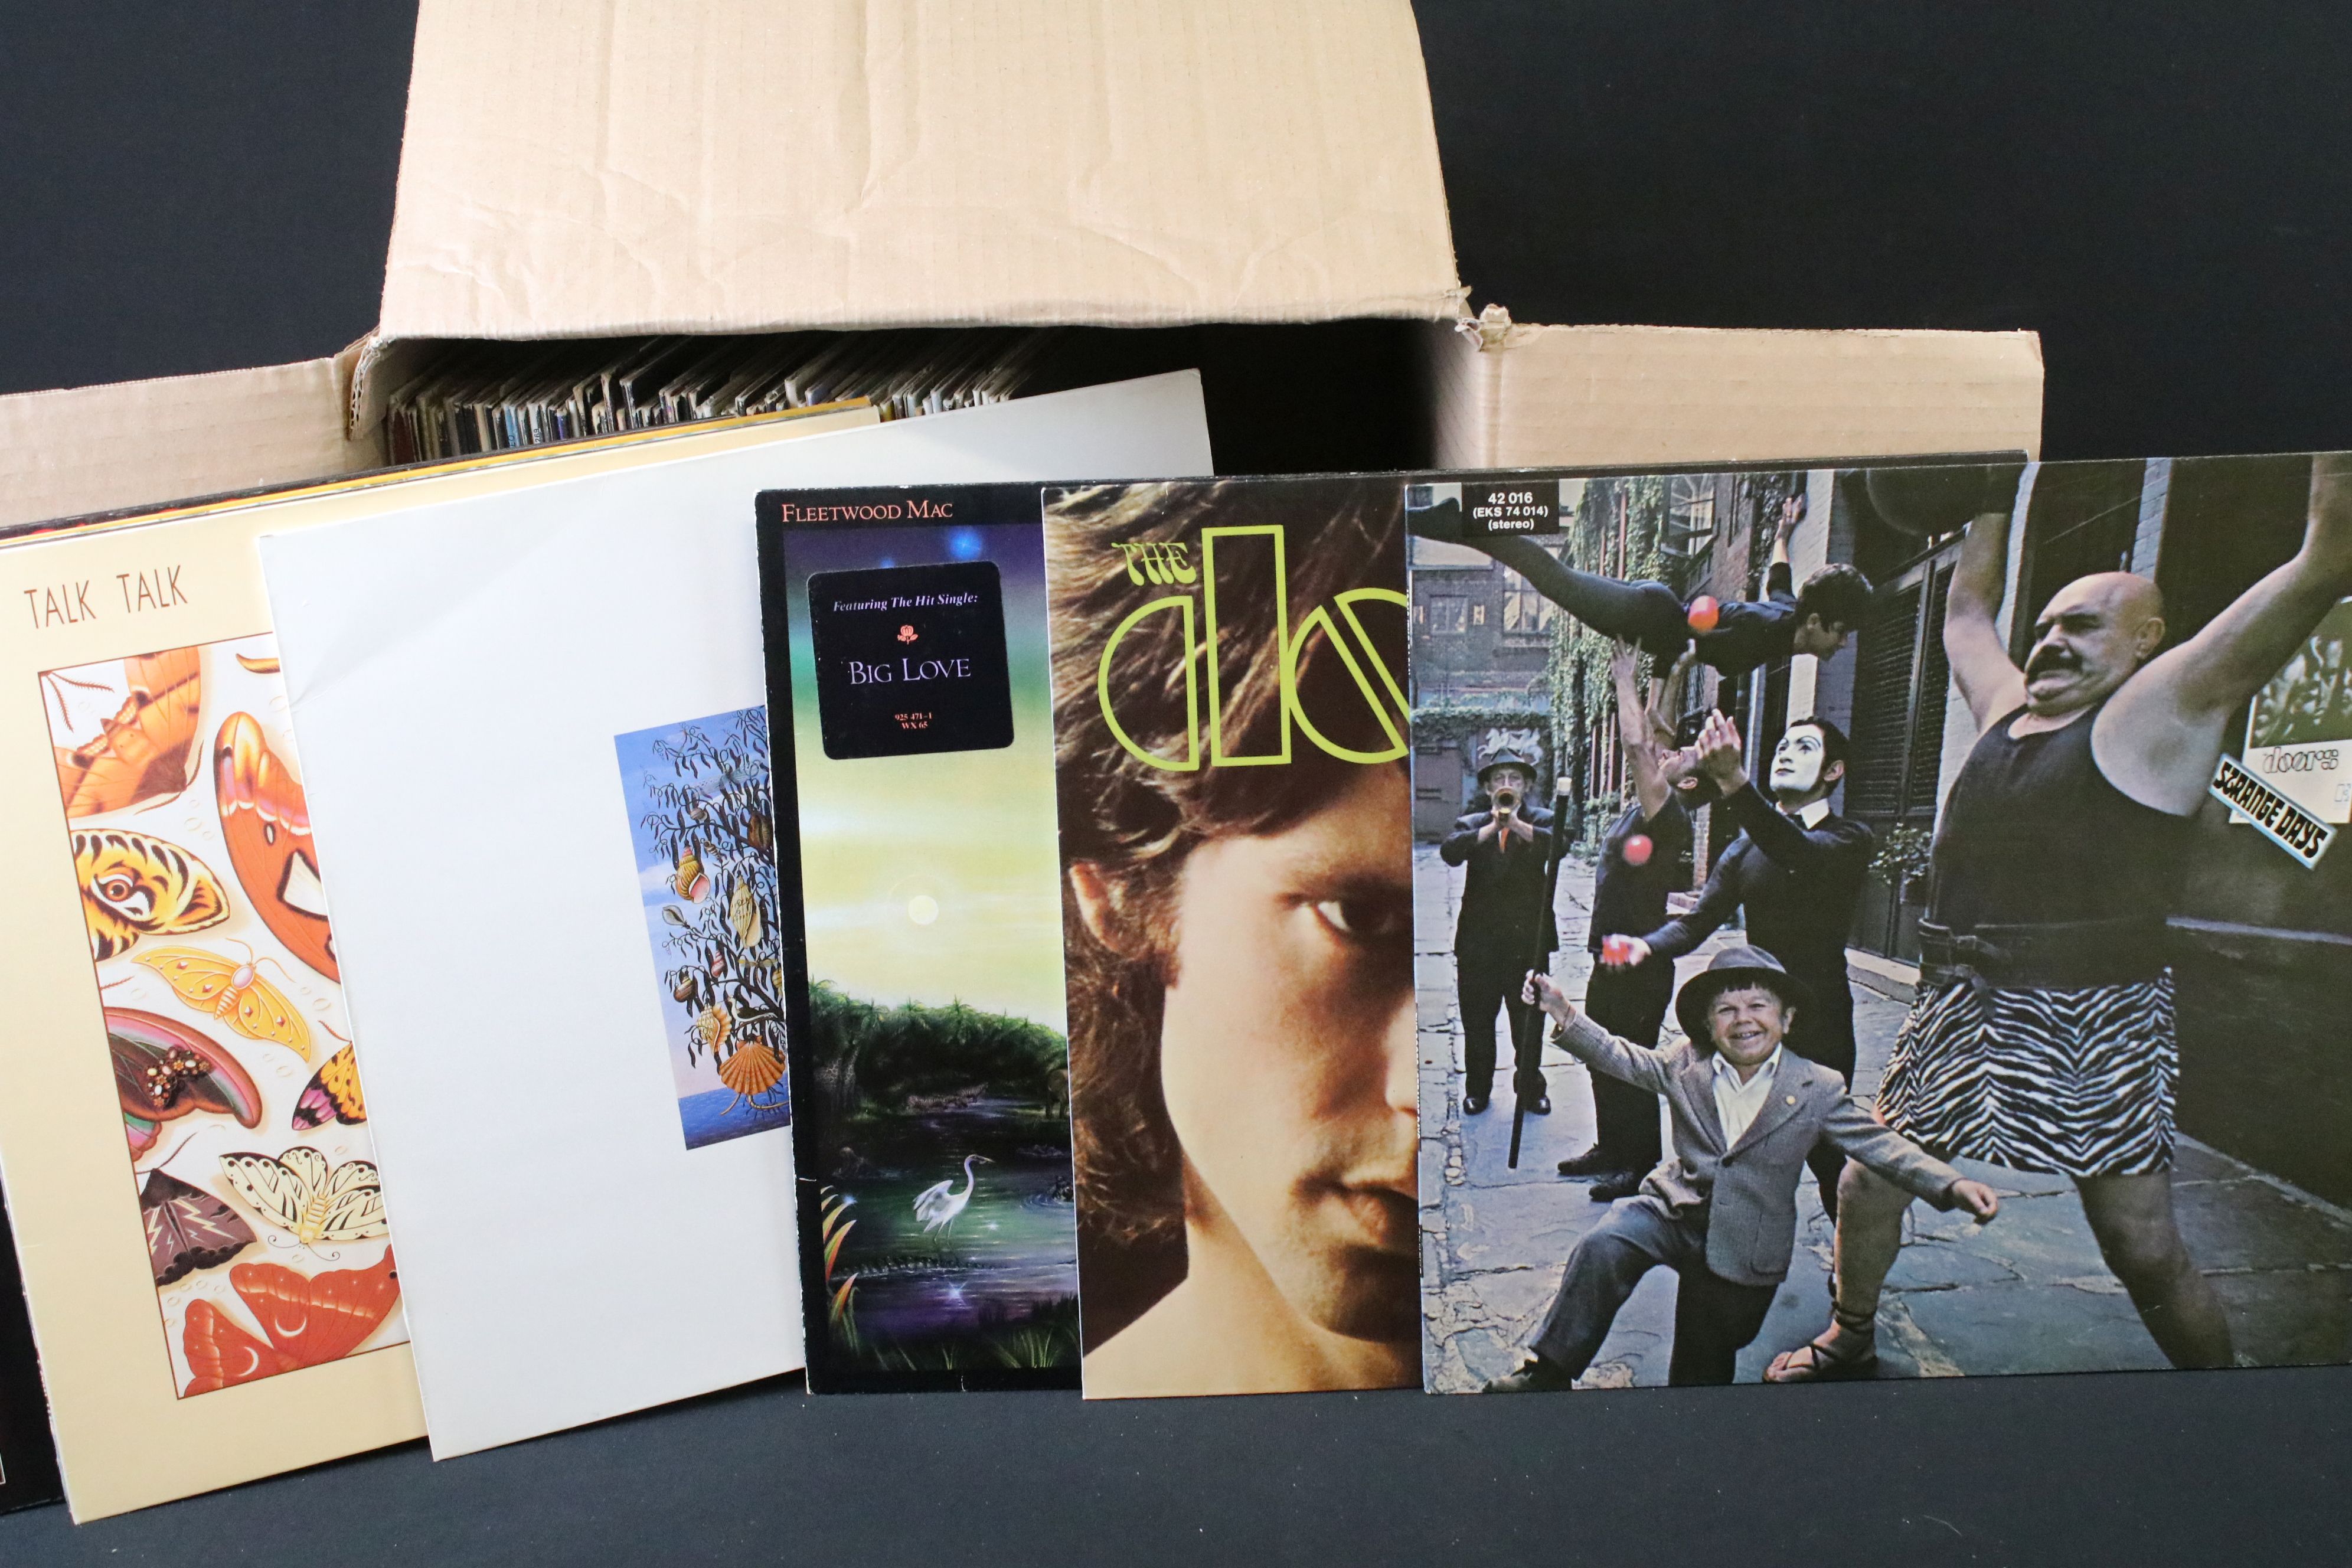 Vinyl - Over 80 Rock & Pop LPs to include Captain Beefheart, Fleetwood Mac, The Doors, The - Image 4 of 7